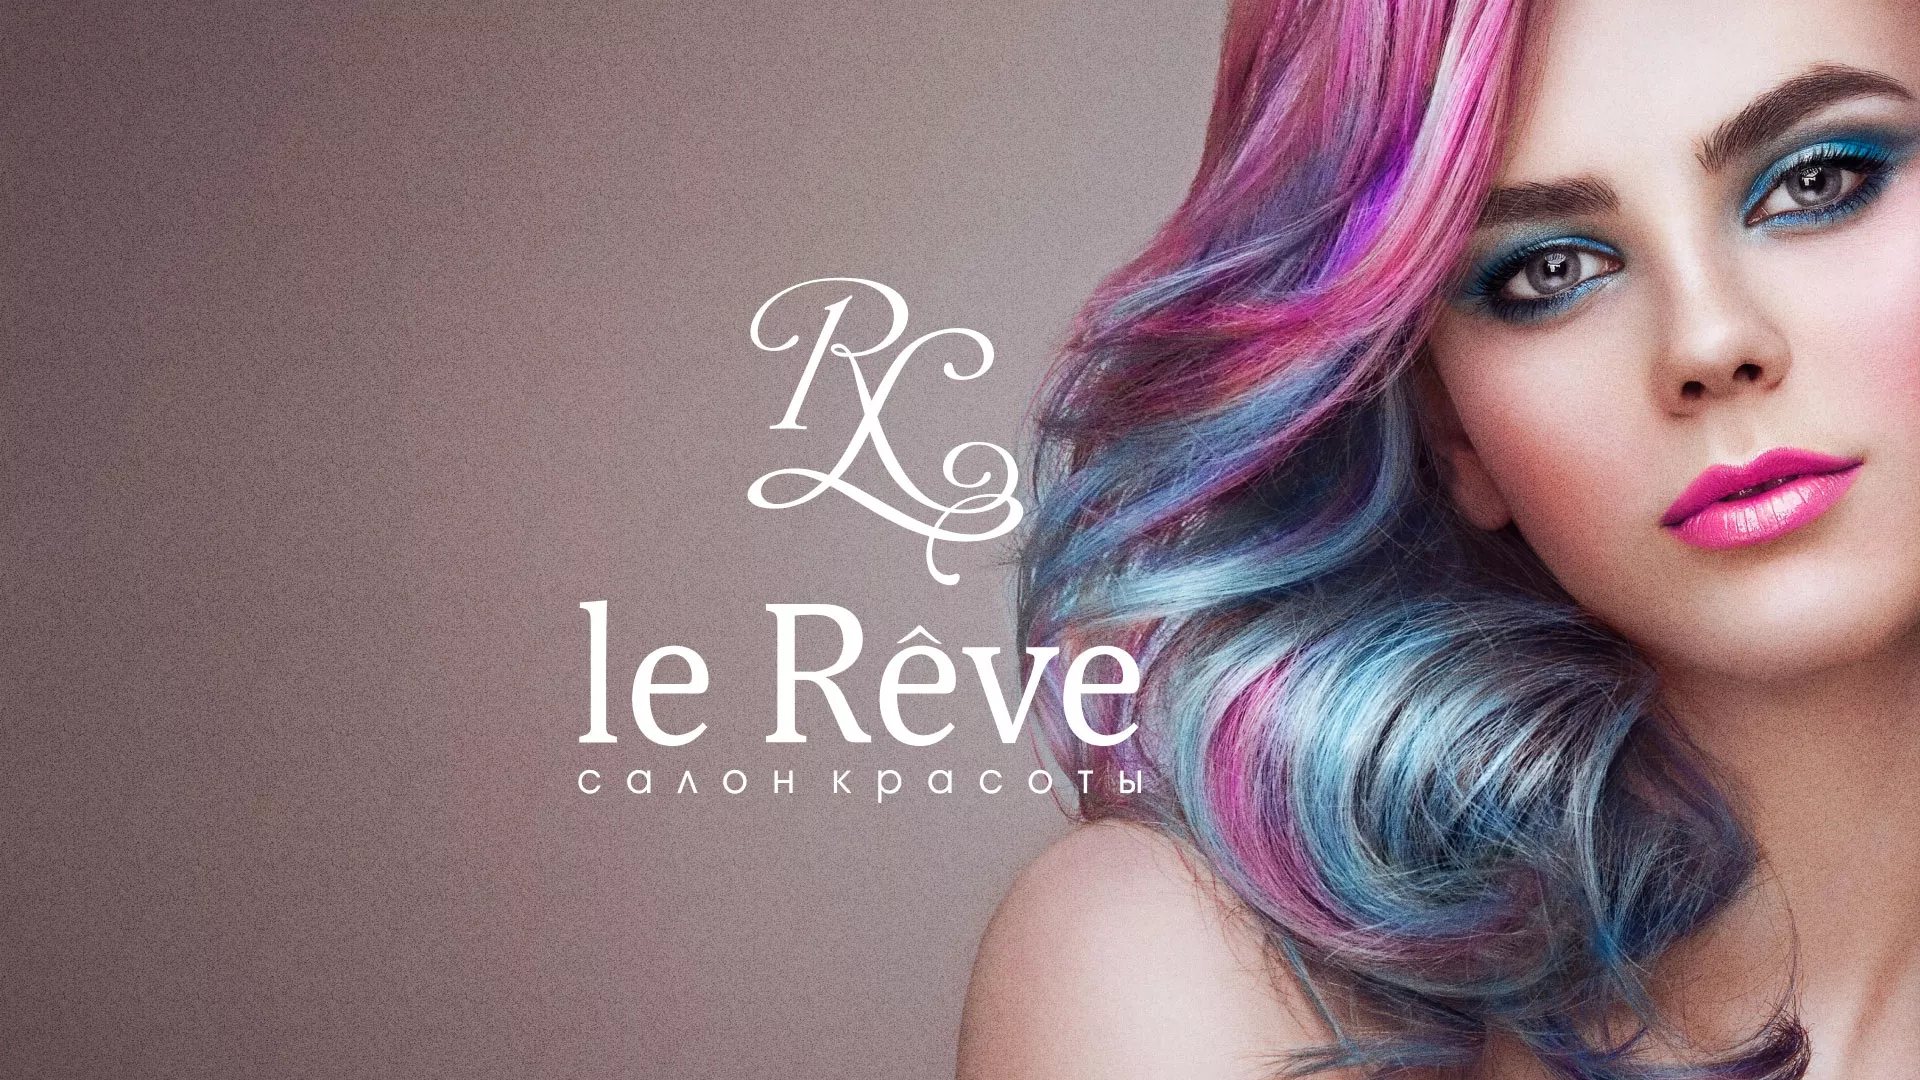 Создание сайта для салона красоты «Le Reve» в Южно-Сахалинске